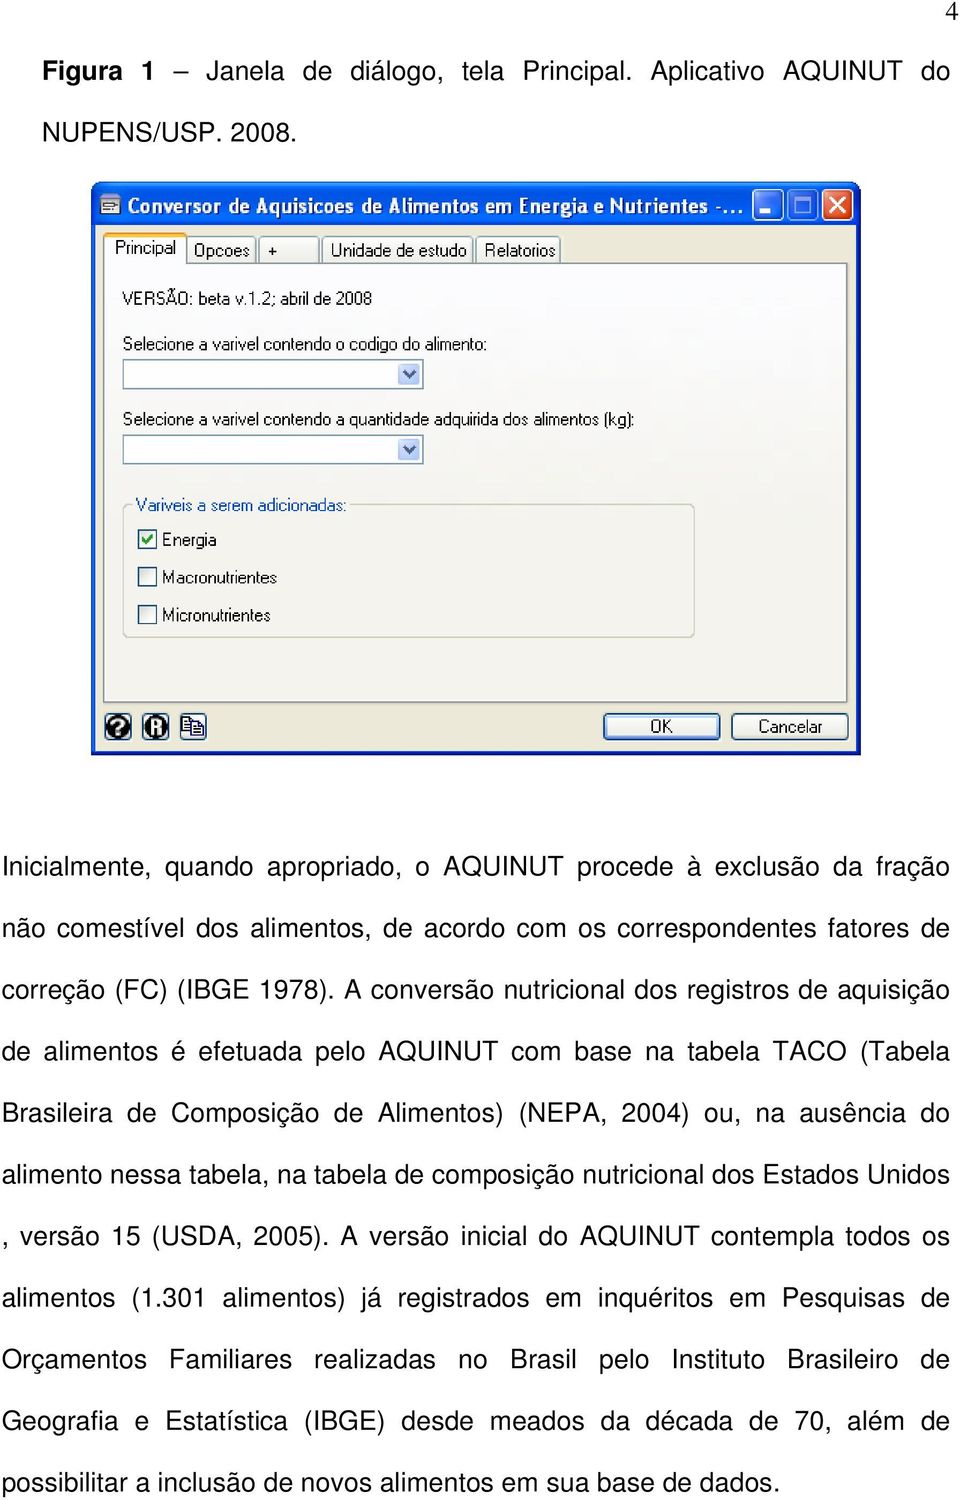 A conversão nutricional dos registros de aquisição de alimentos é efetuada pelo AQUINUT com base na tabela TACO (Tabela Brasileira de Composição de Alimentos) (NEPA, 2004) ou, na ausência do alimento